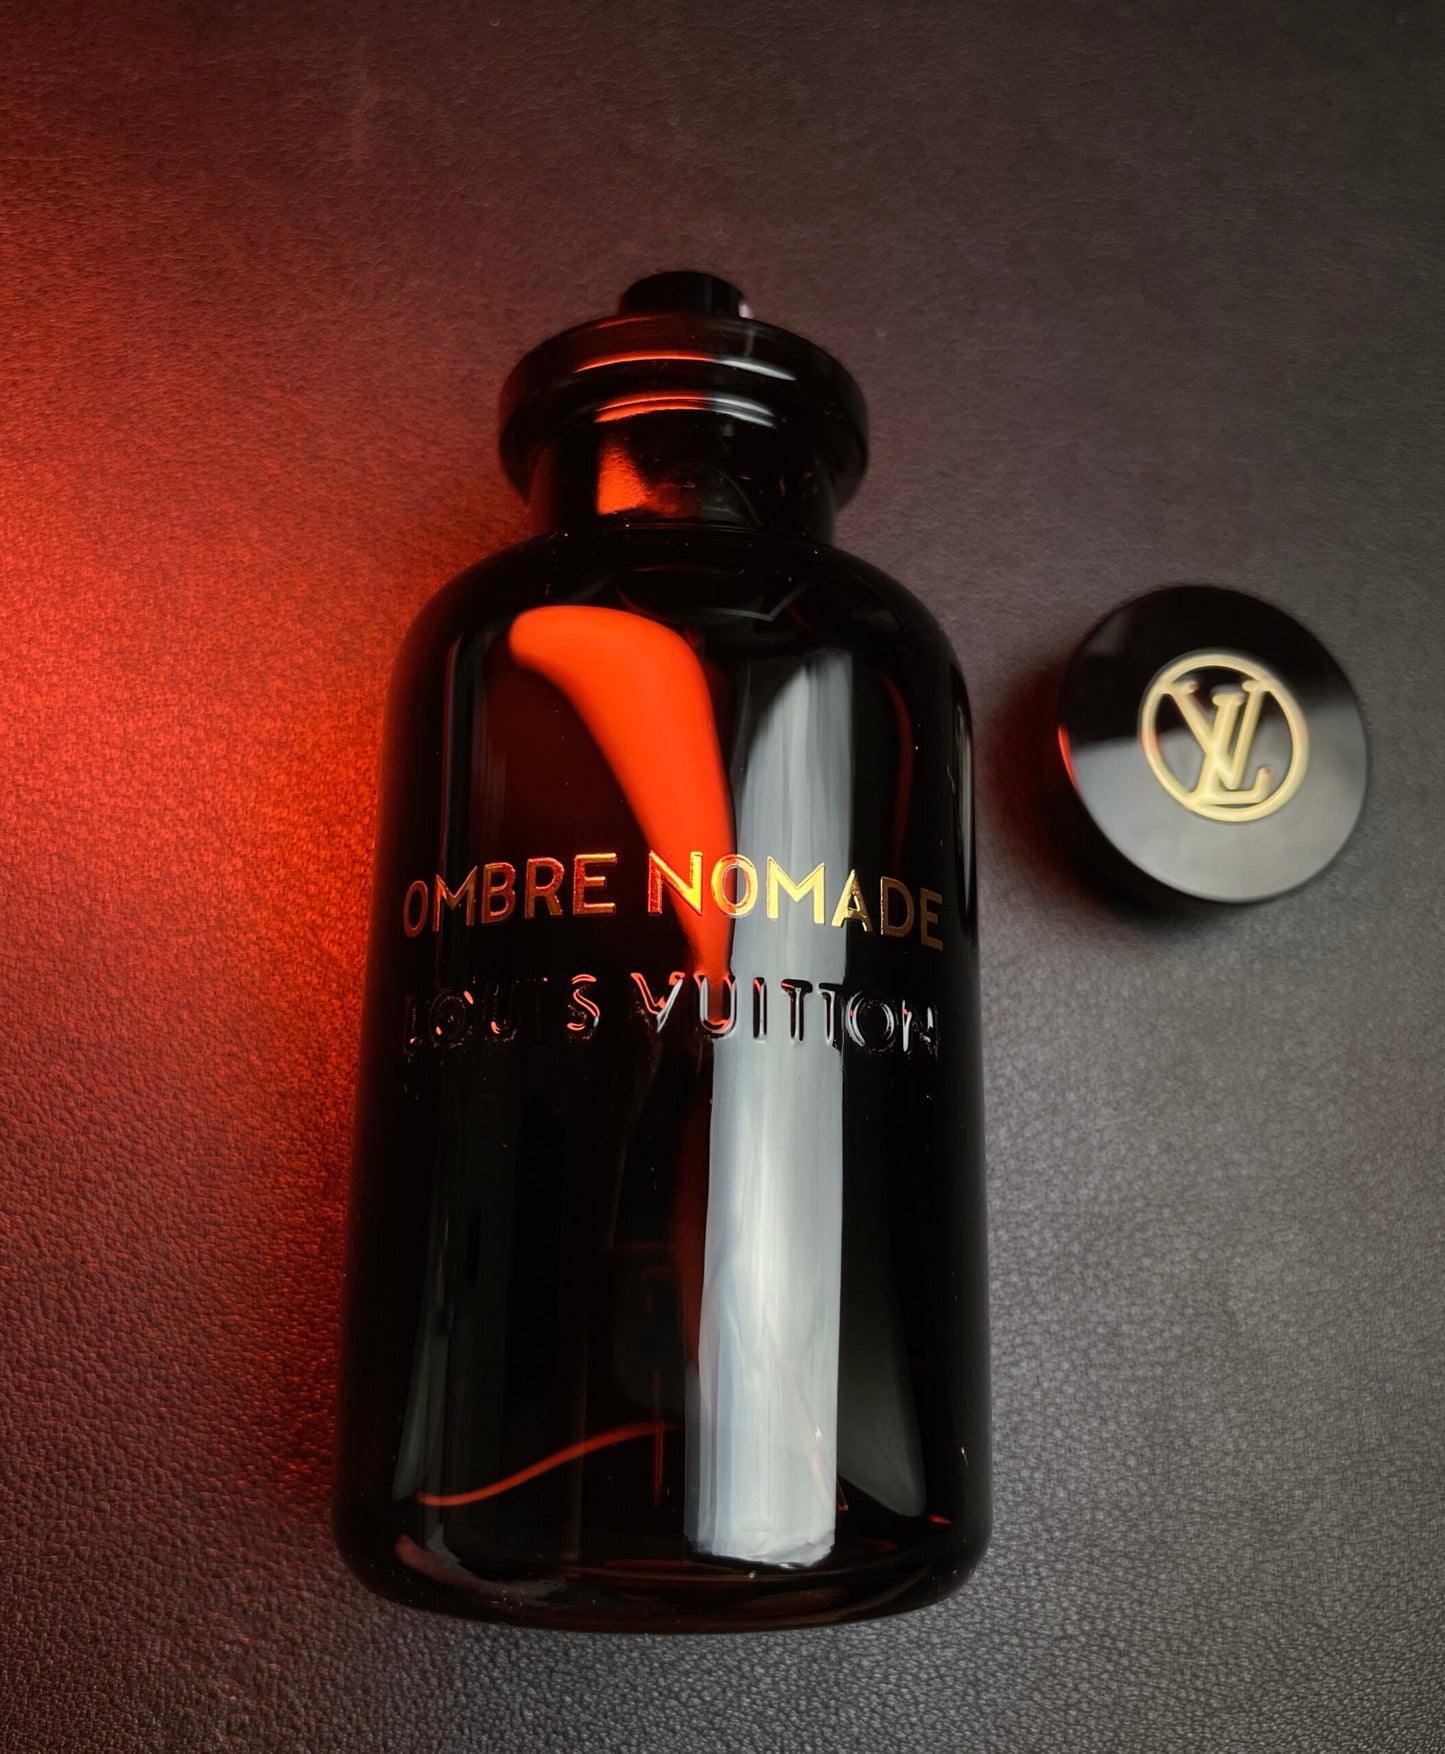 Louis Vuitton - Ombre Nomade 100mL